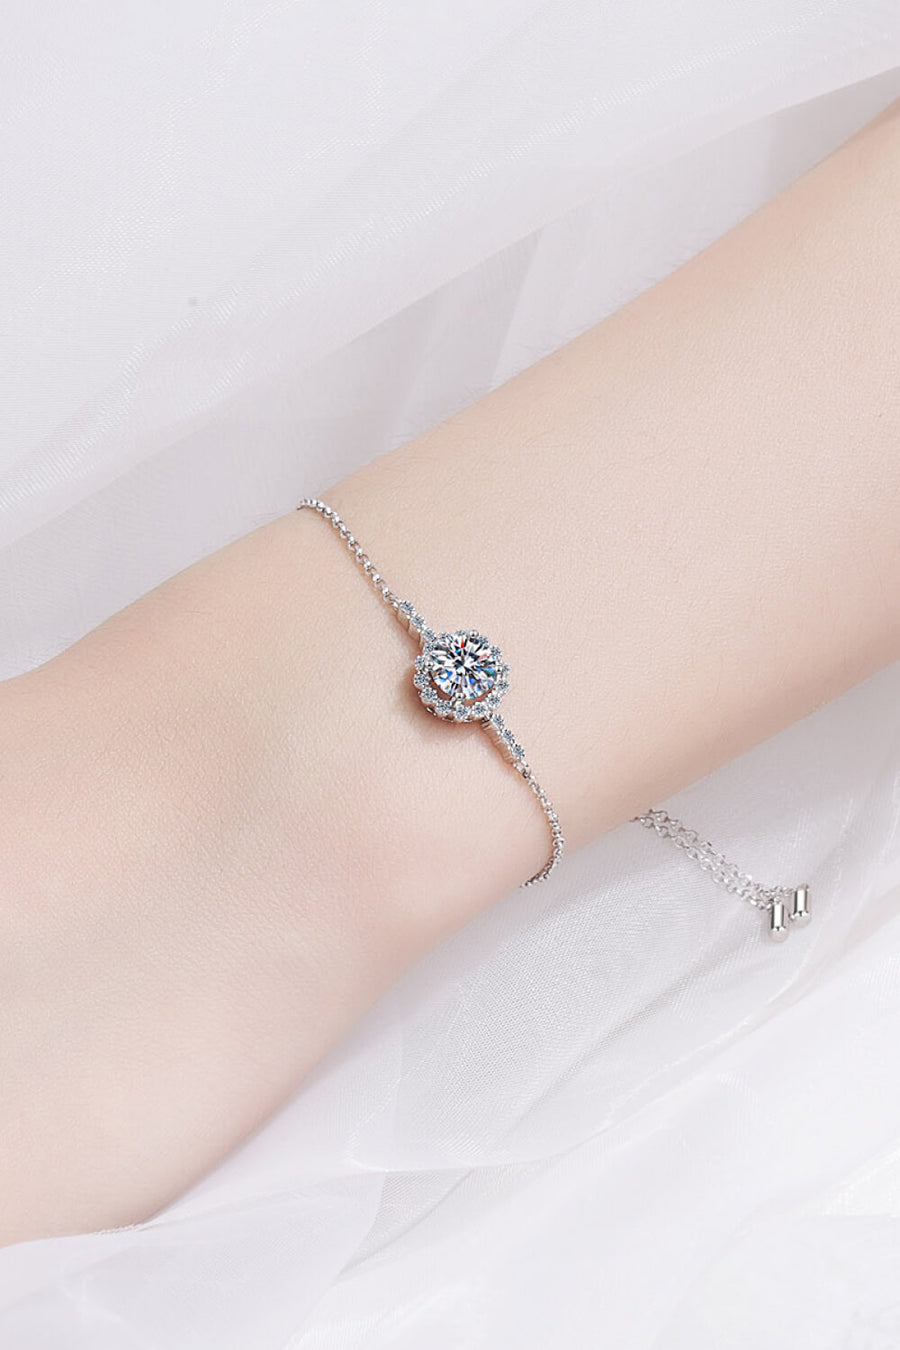 Best Diamond Bracelet Jewelry Gifts for Women | 1 Carat Round Diamond Chain Bracelet | MASON New York